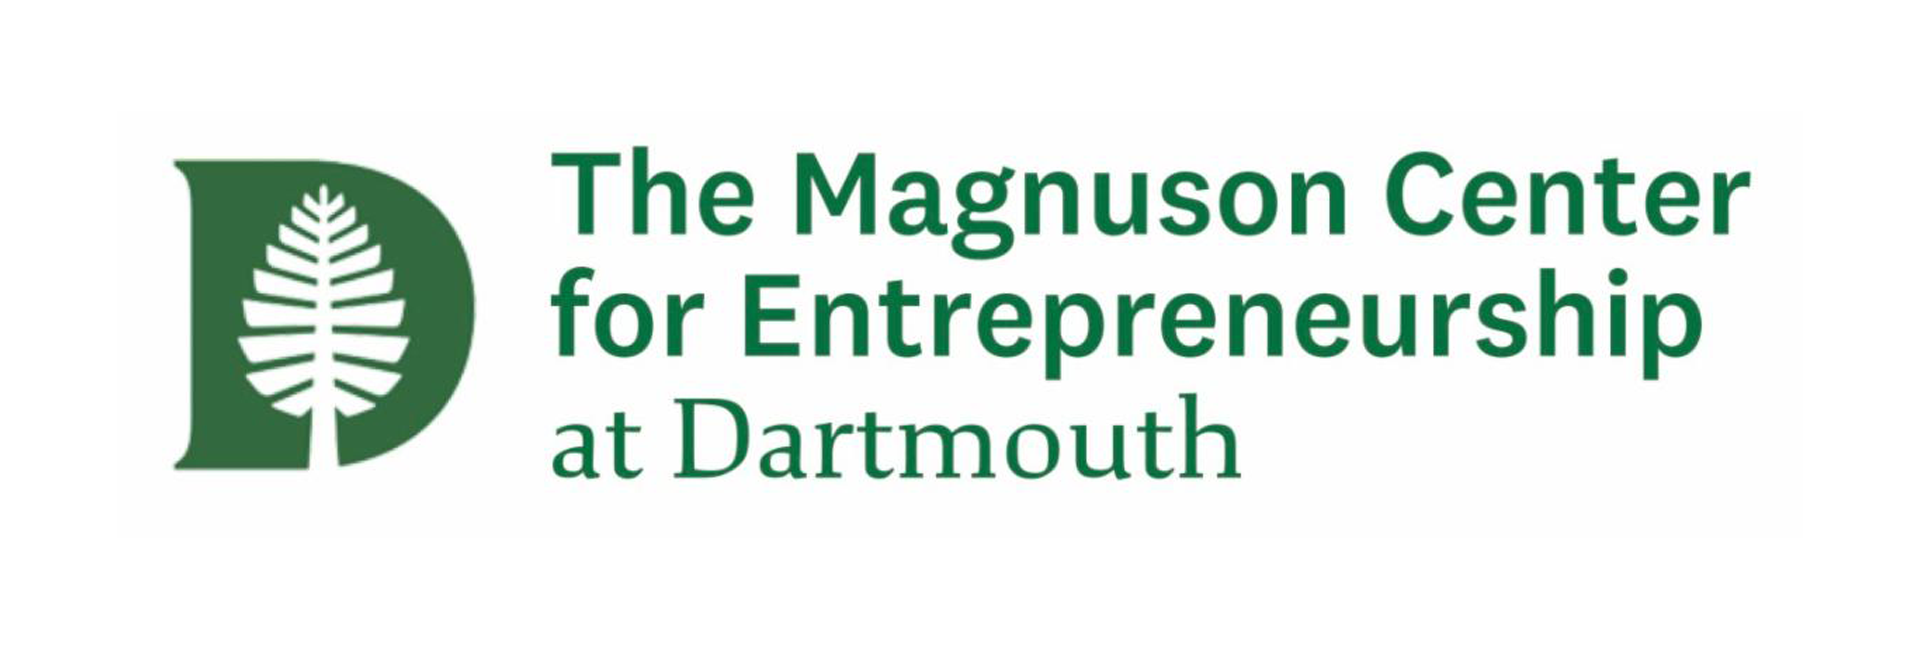 The Magnuson Center for Entrepreneurship at Dartmouth logo